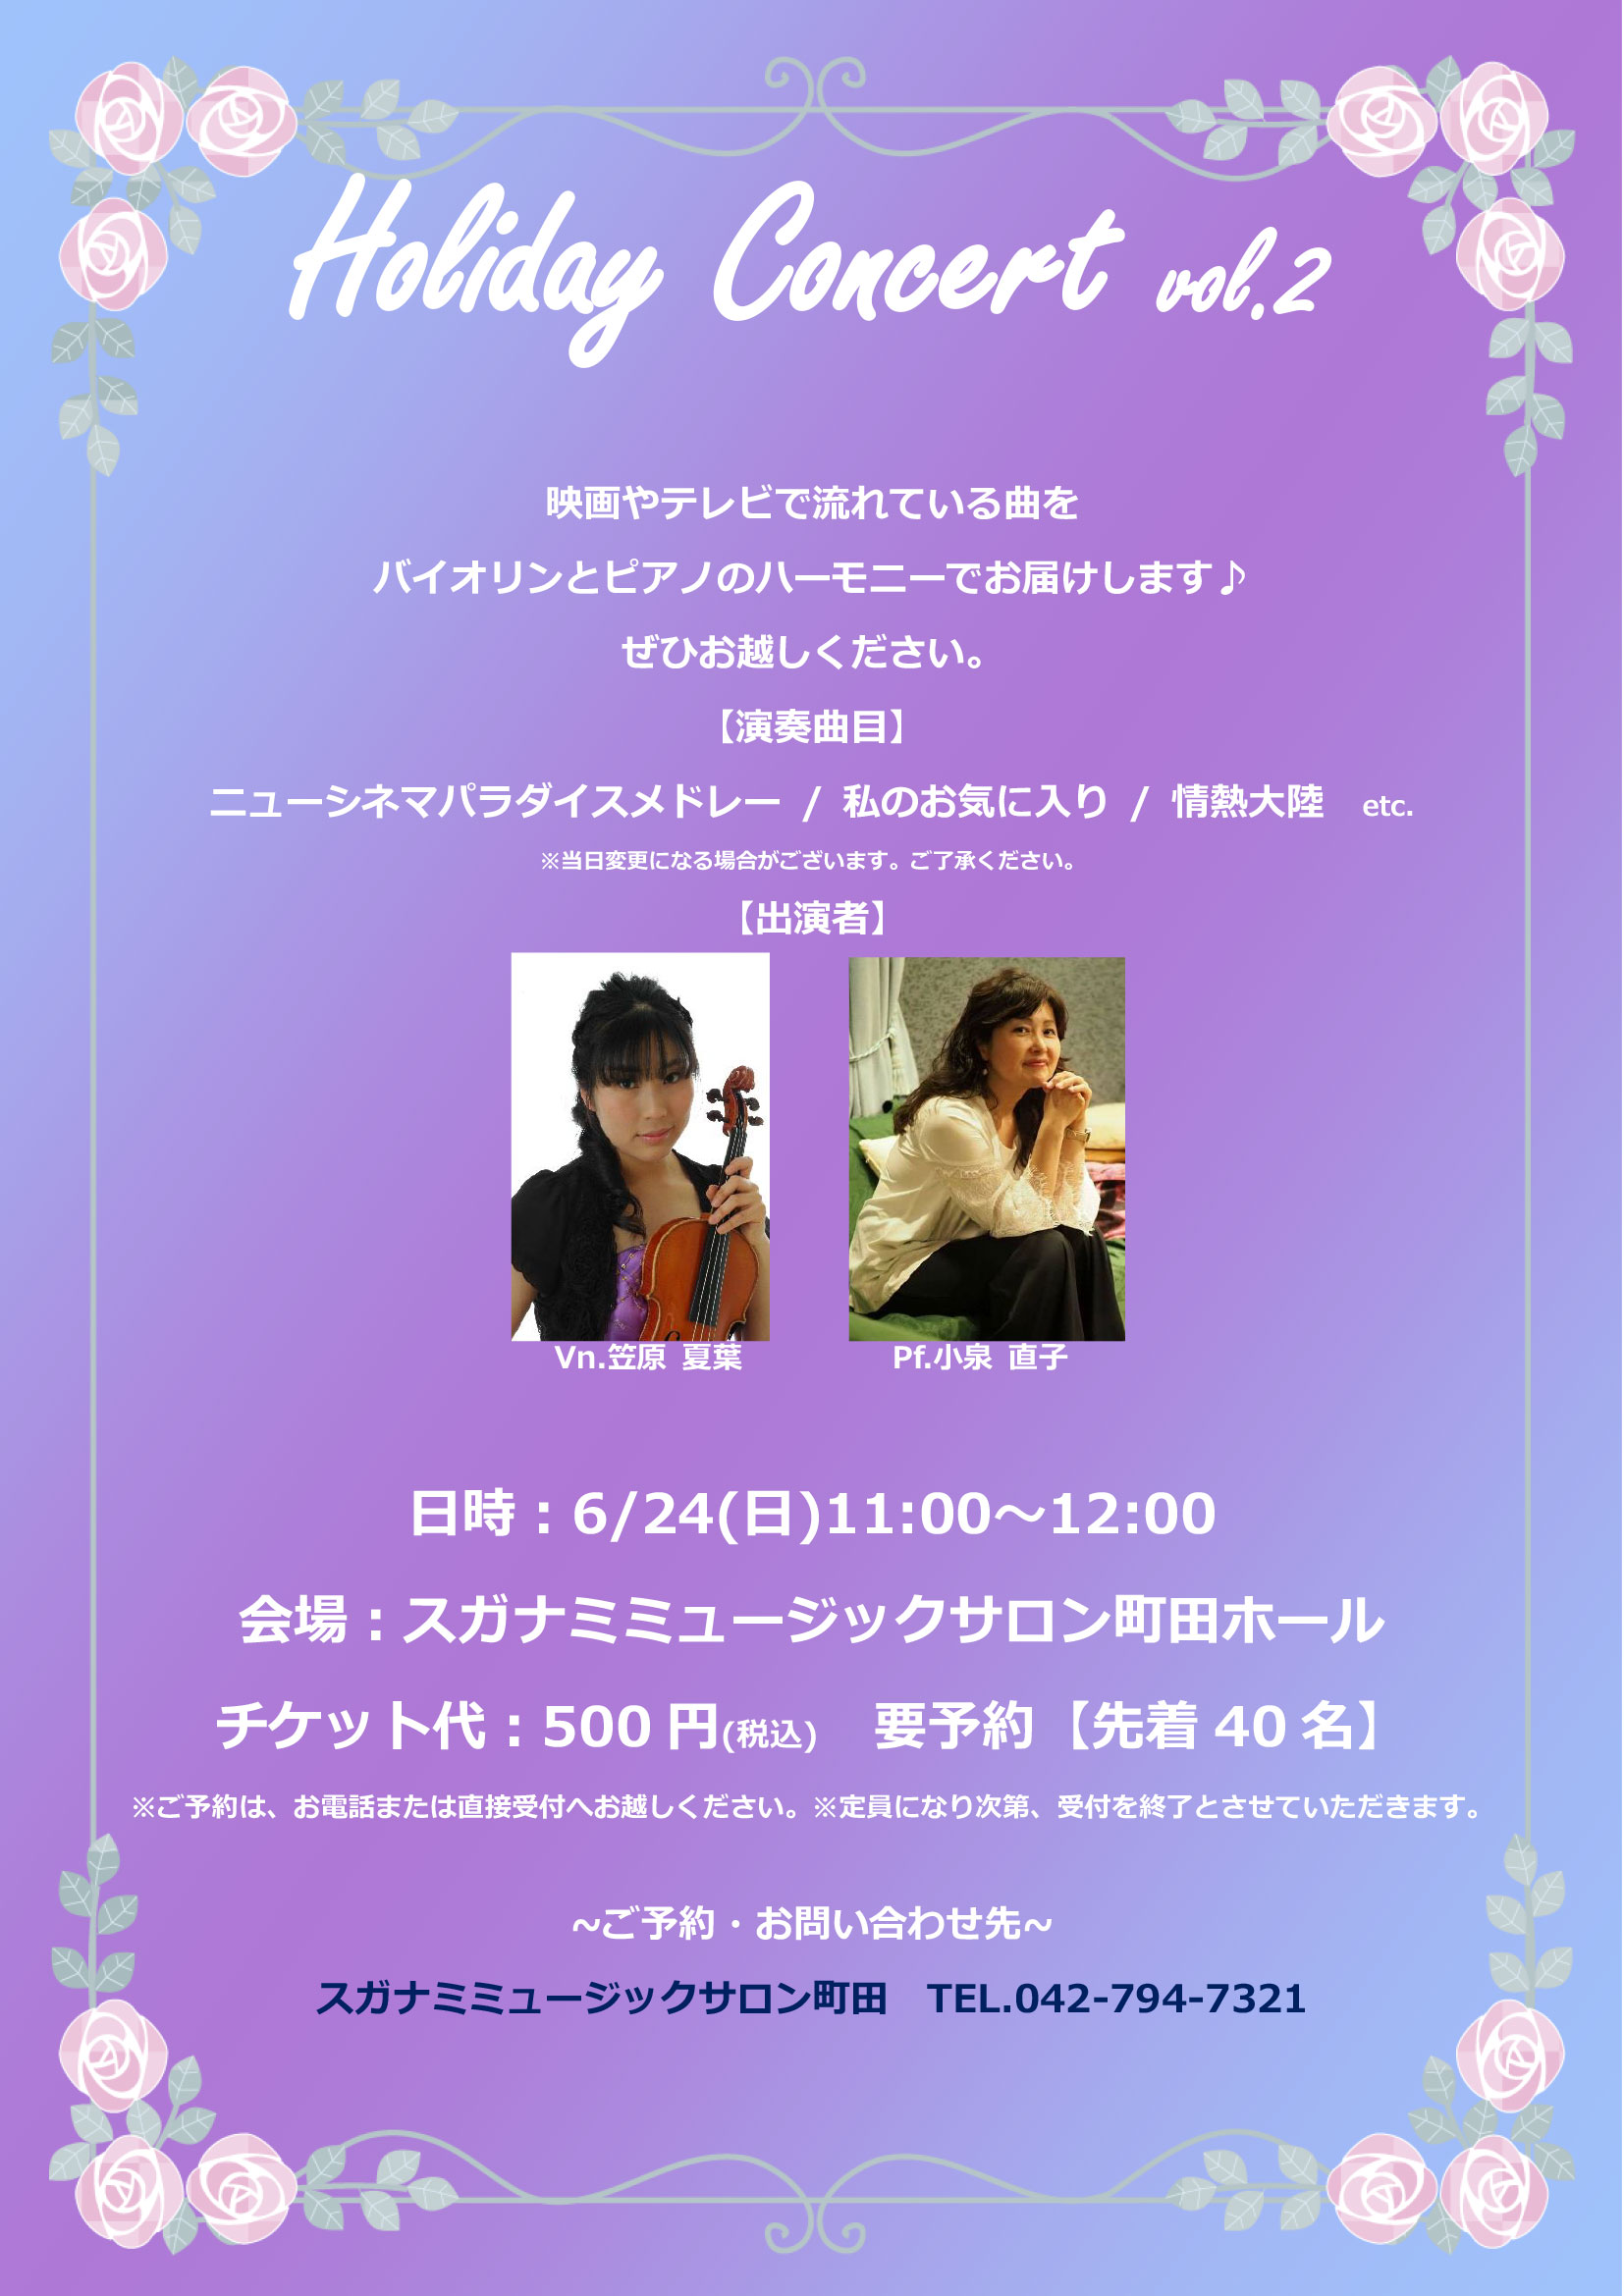 スガナミミュージックサロン町田バイオリンとピアノによる Holiday Concert vol.2